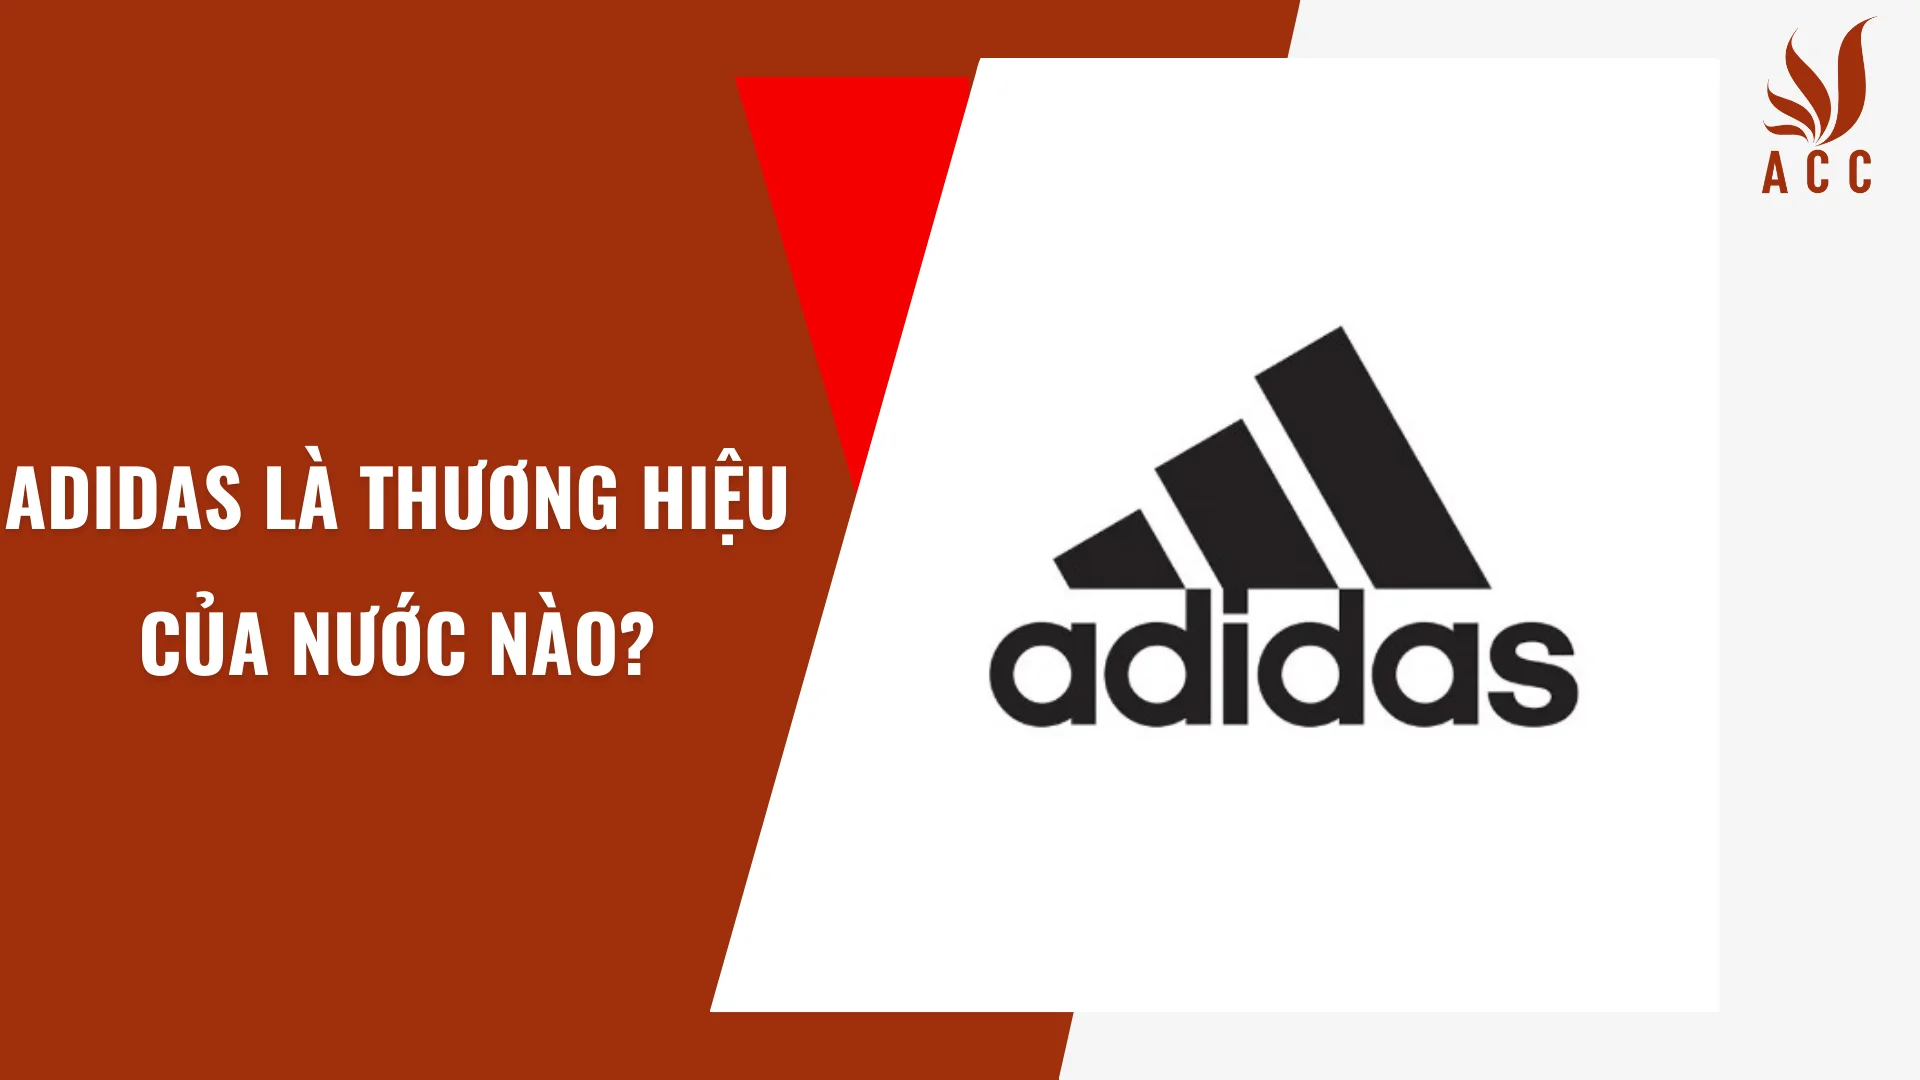 Adidas là thương hiệu của nước nào?